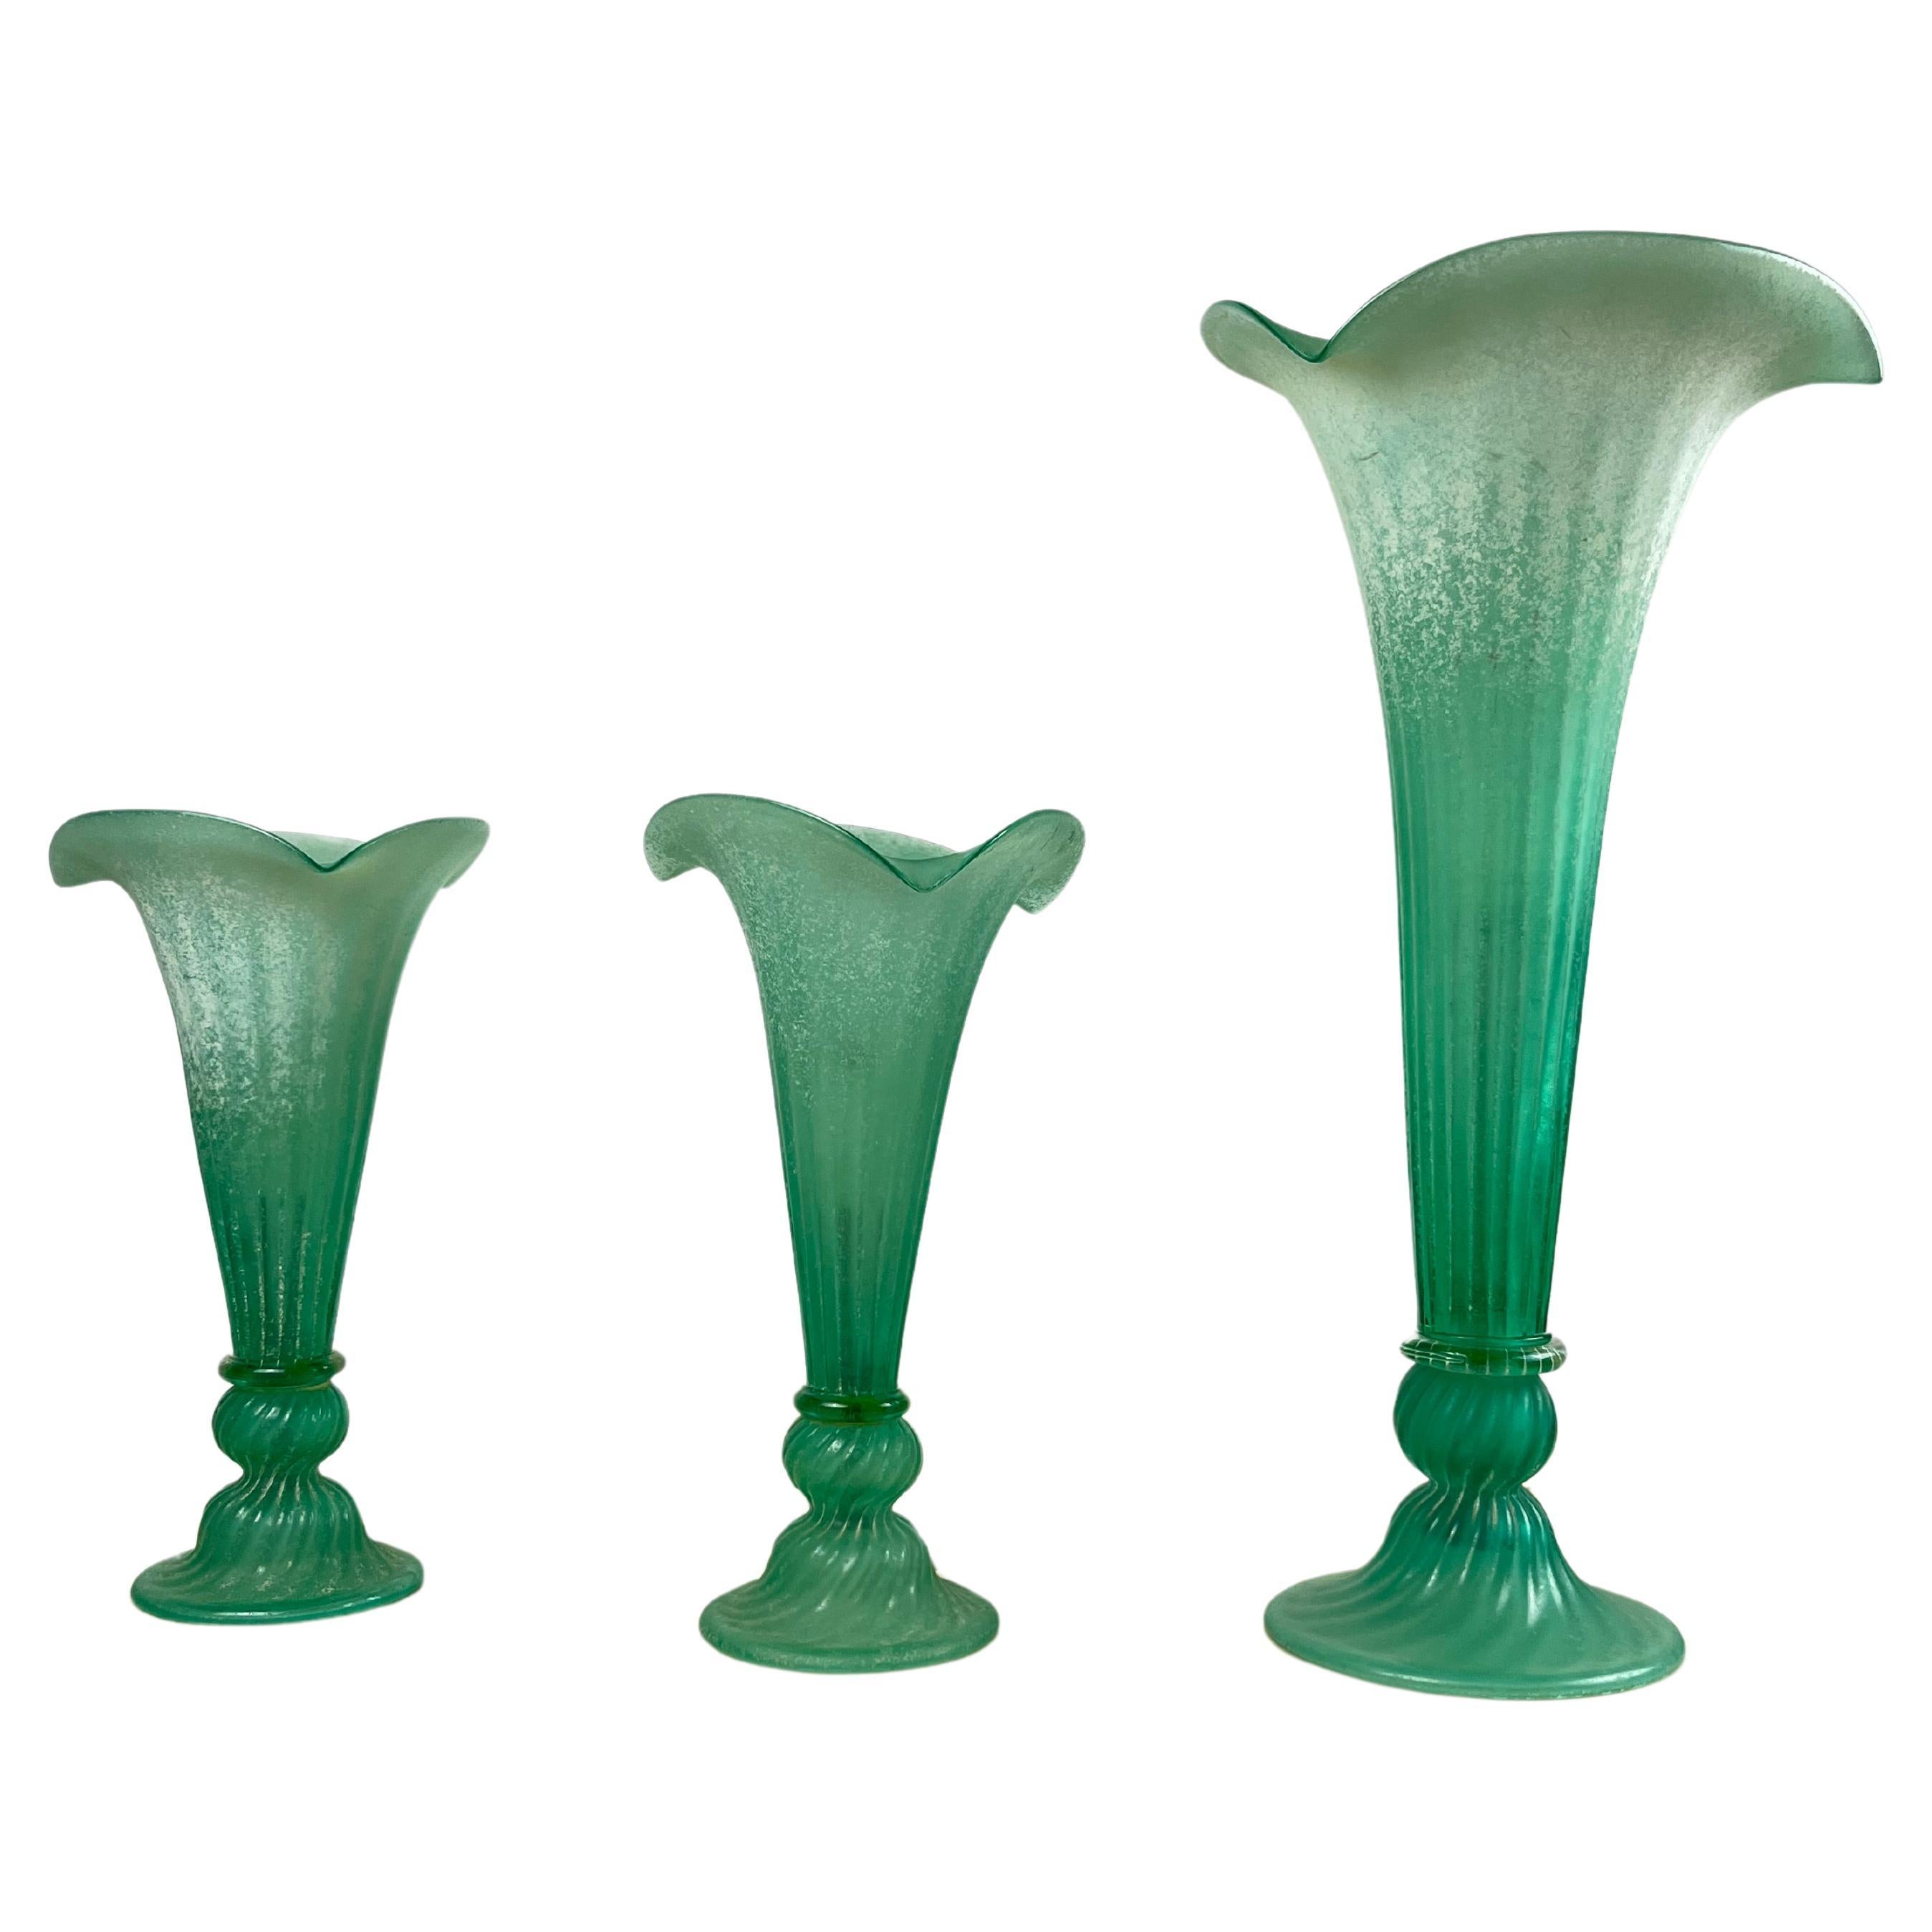 Satz von 3 Lampen aus grünem Murano-Glas Italienisches Design/One  1980s.